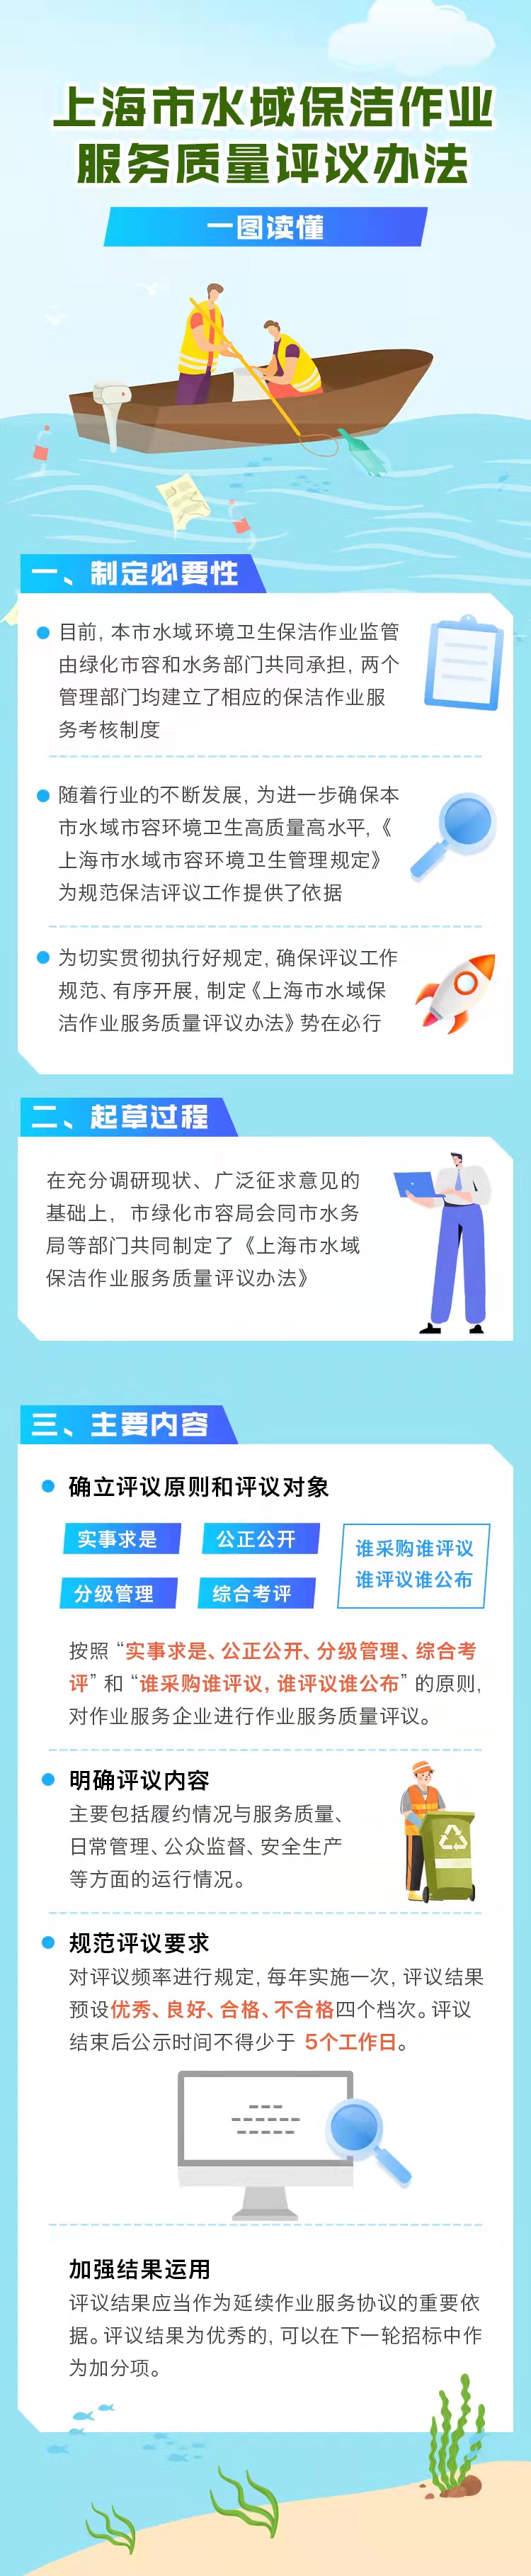 关于印发《上海市水域保洁作业服务质量评议办法》的通知.jpg